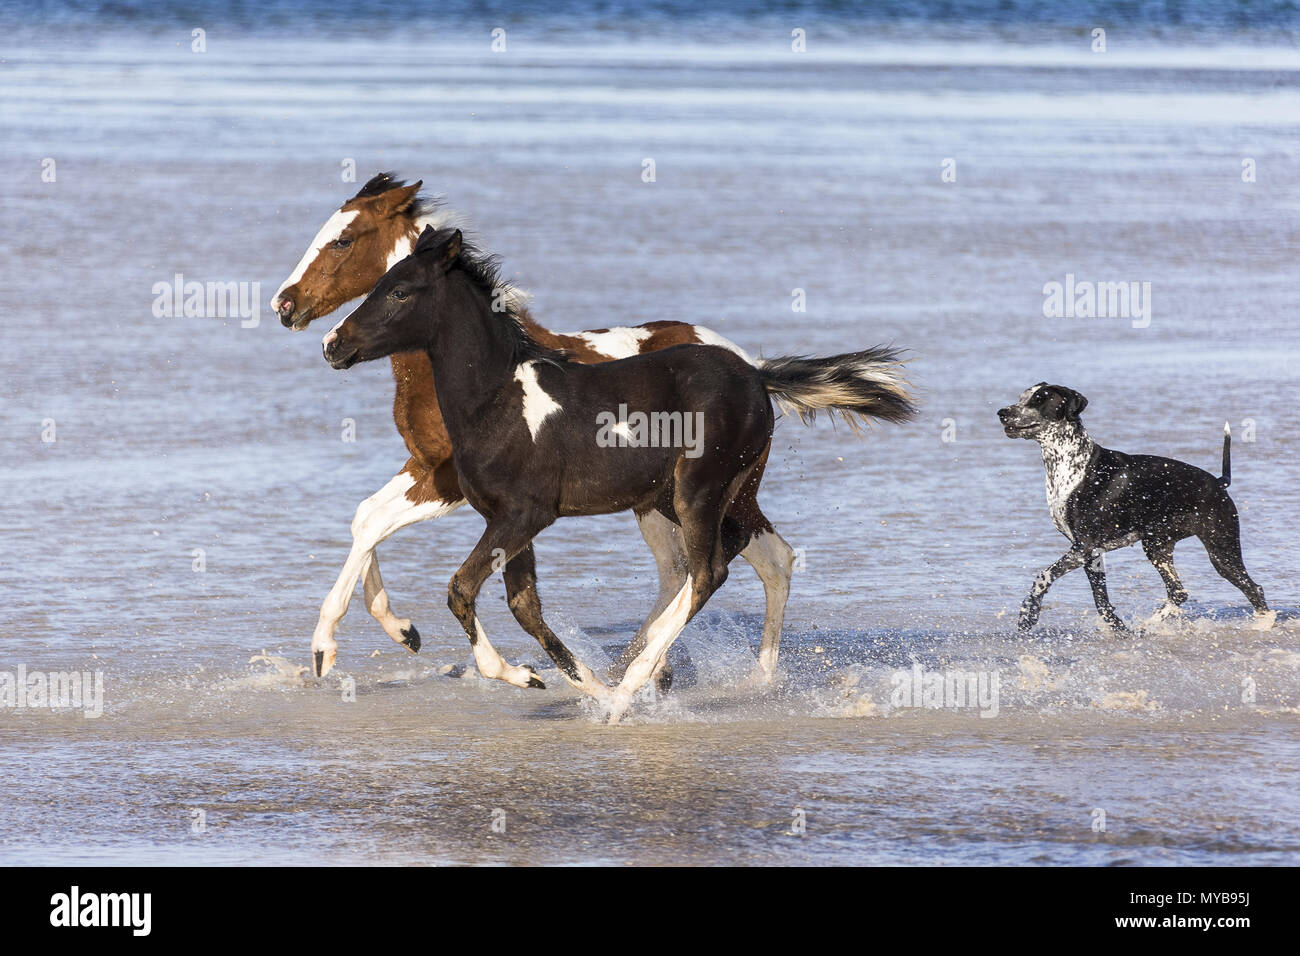 Pinto. Zwei Pinto galoppieren im flachen Wasser, gefolgt von einem Hund. Ägypten. Stockfoto